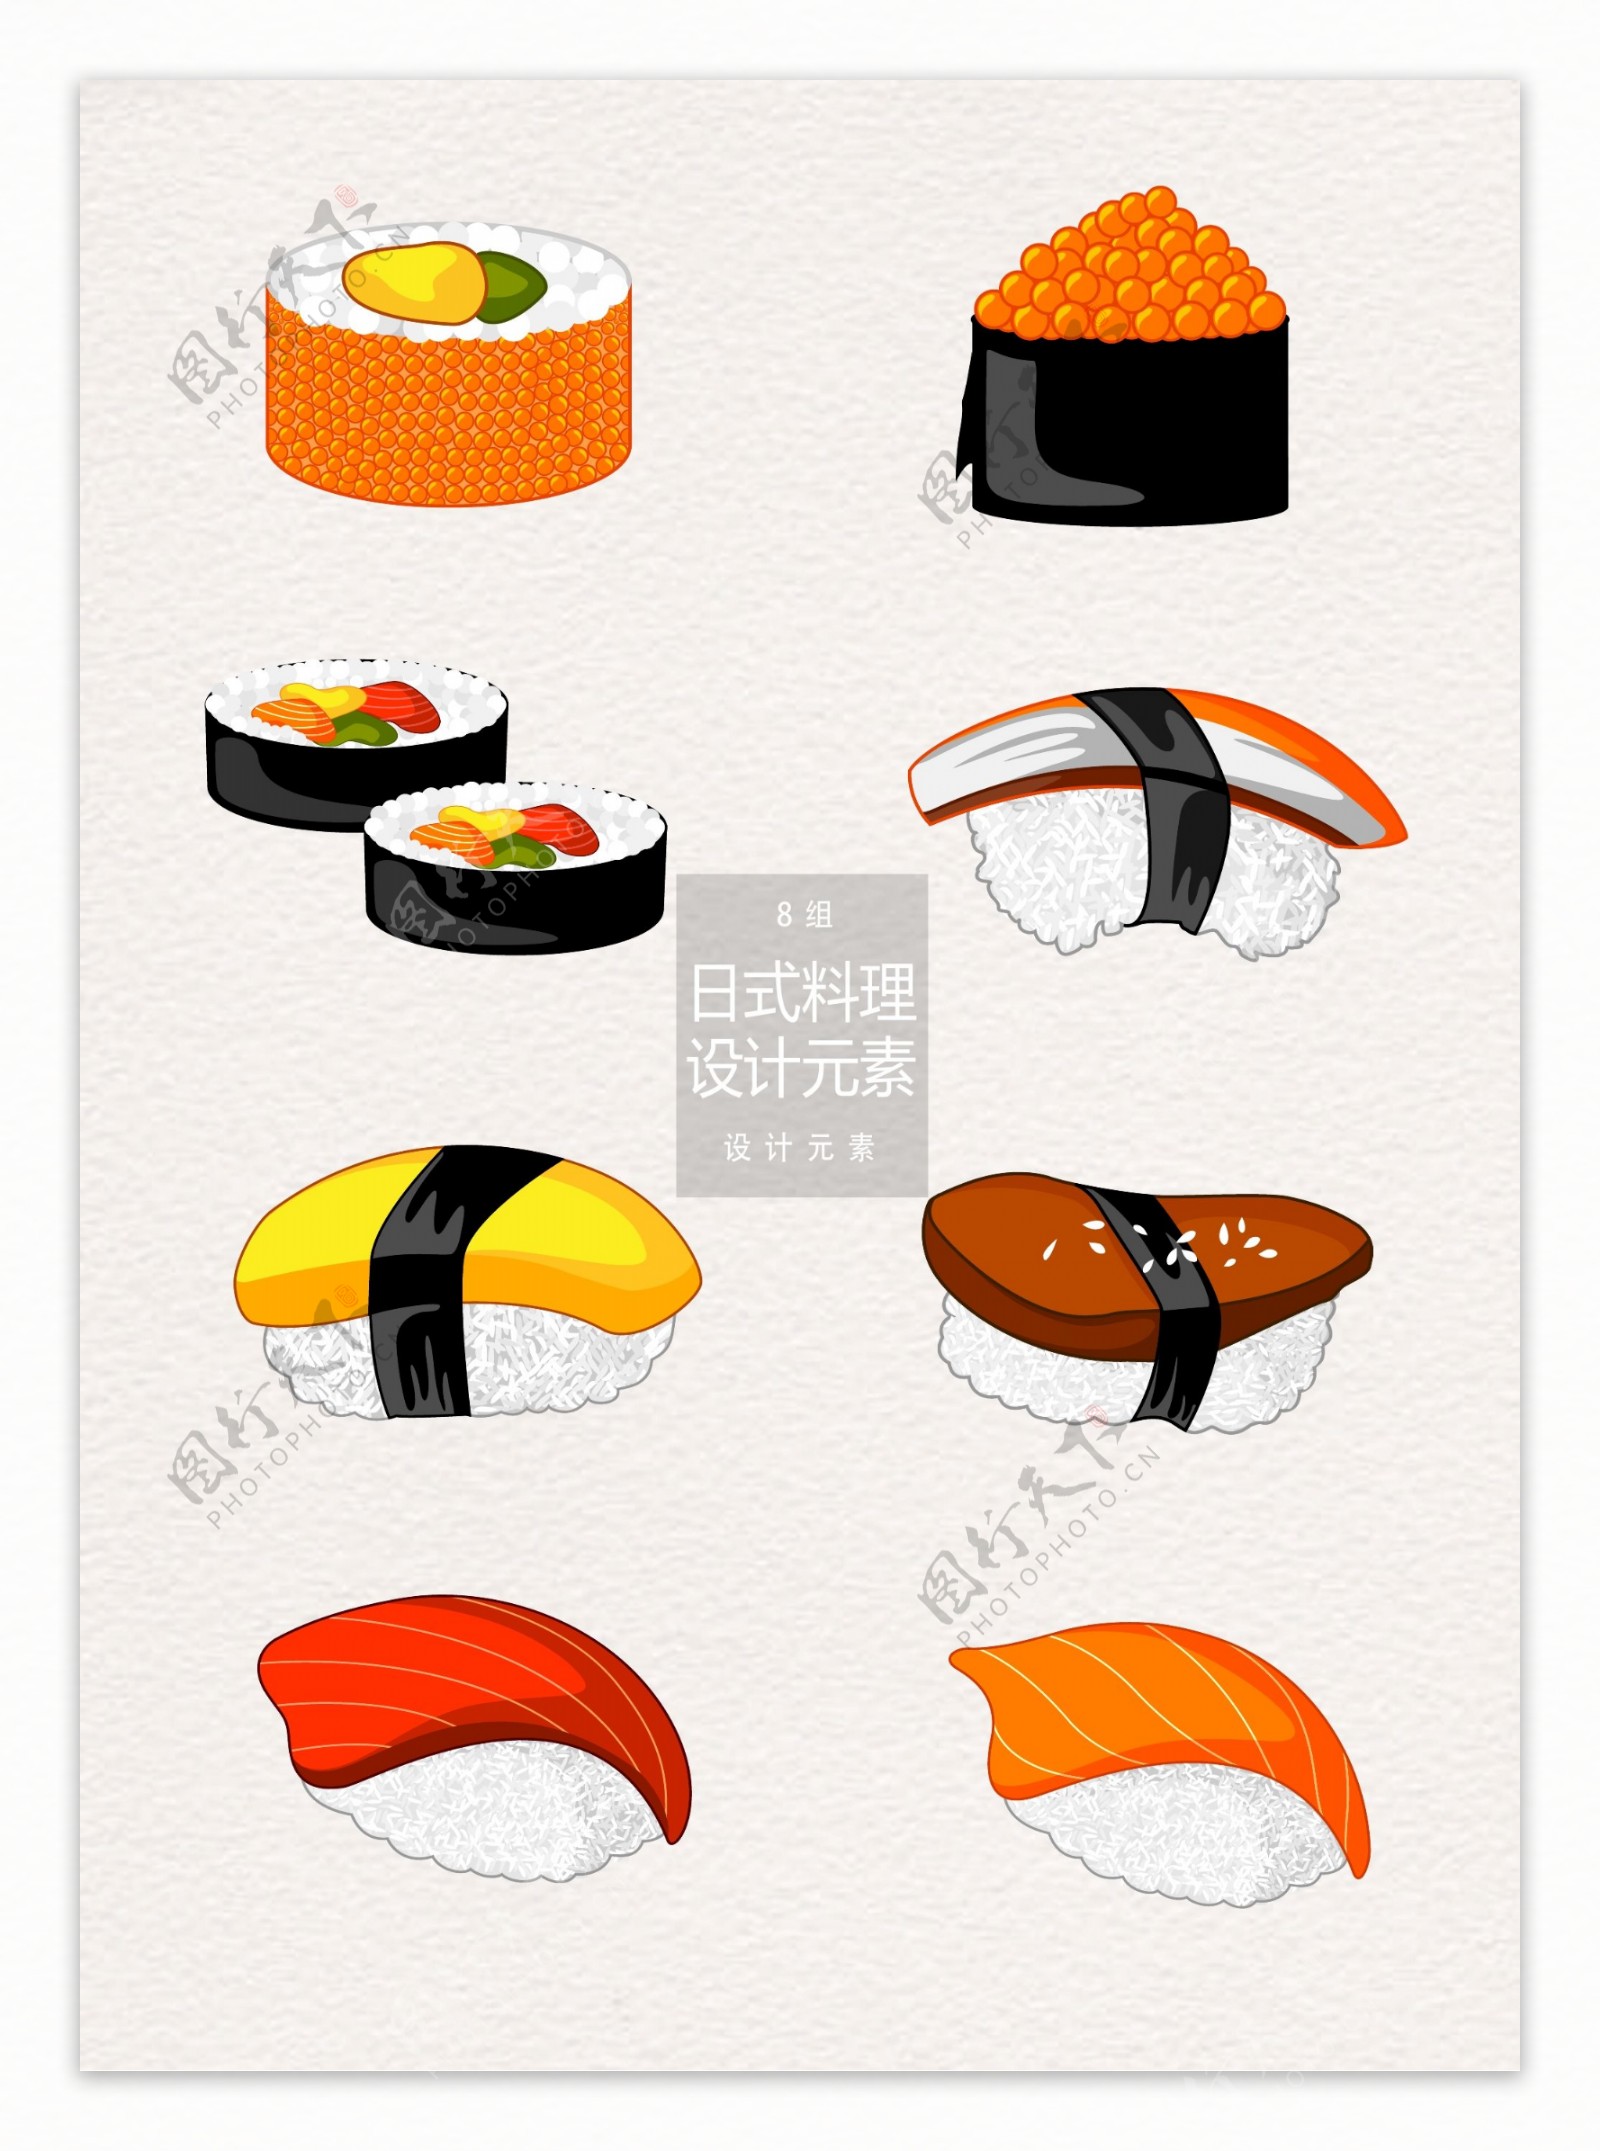 日式料理寿司装饰图案设计元素